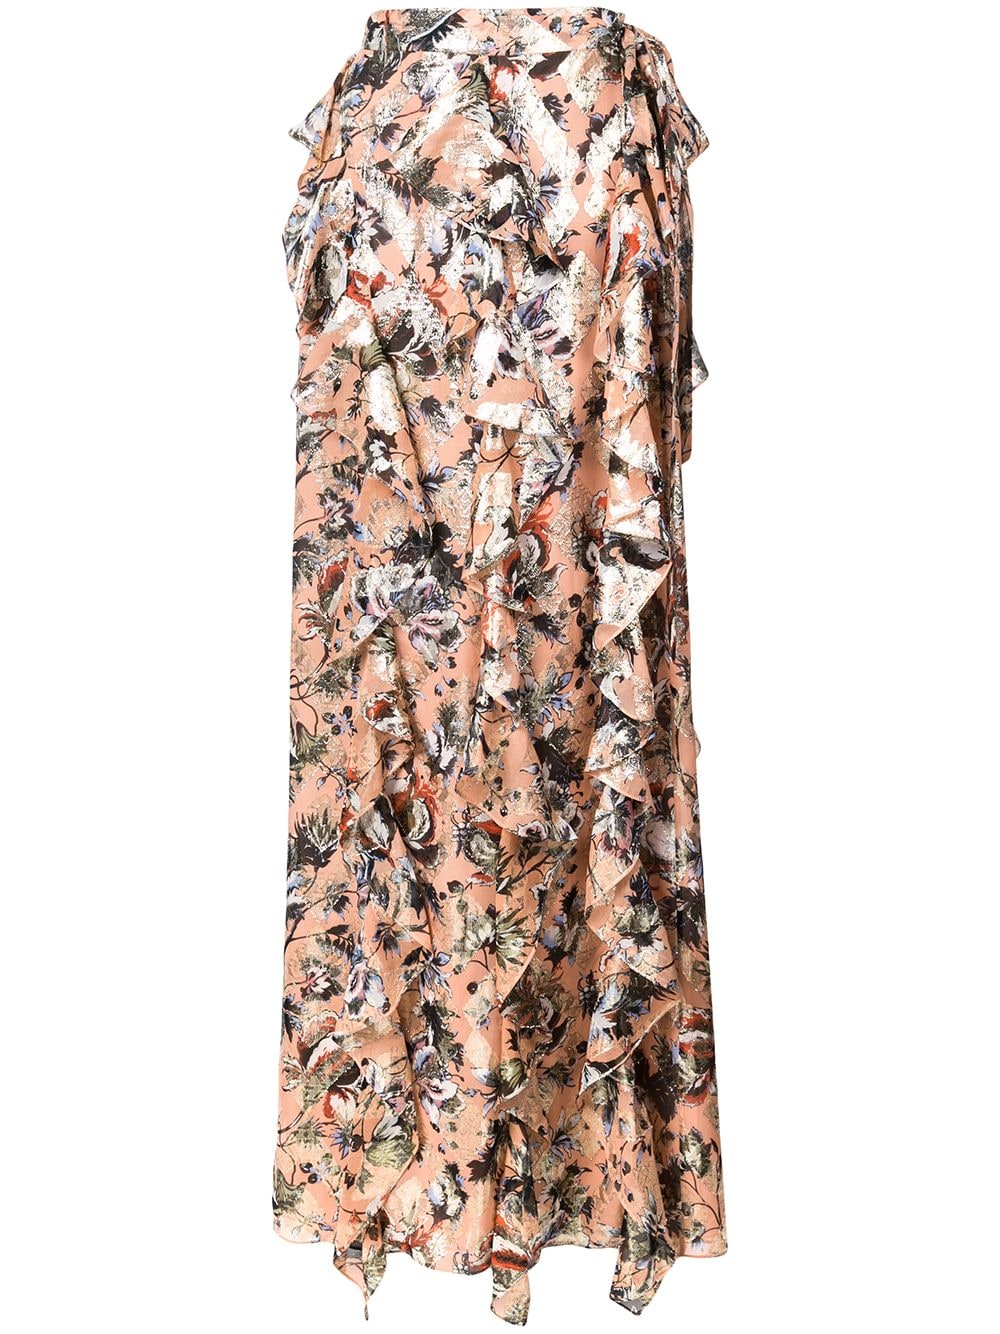 фото Dvf diane von furstenberg юбка с цветочным принтом